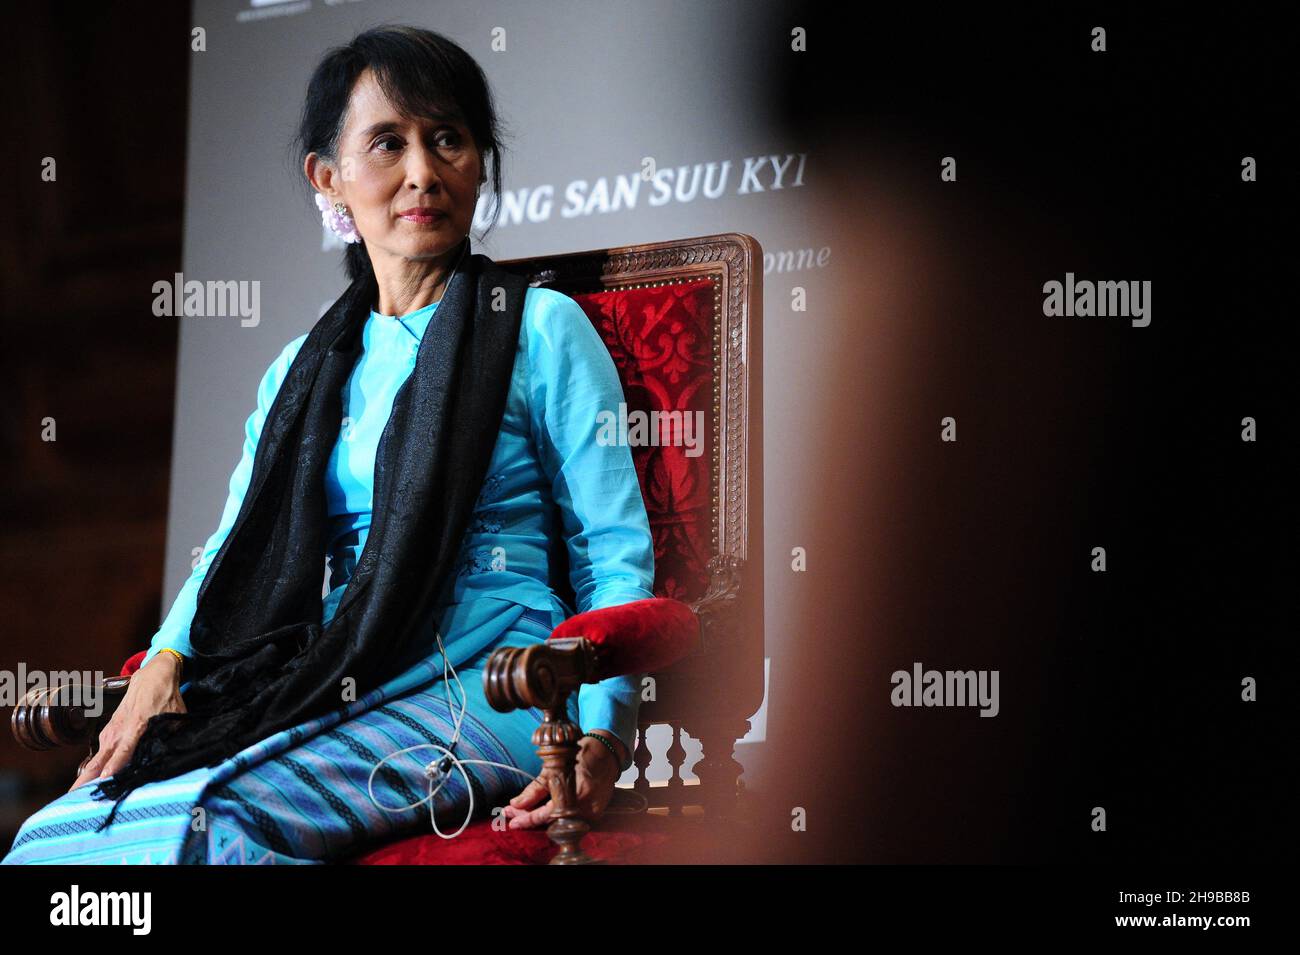 File Photo vom 28. Juni 2012 von Myanmars Demokratie-Champion und Friedensnobelpreisträgerin Aung San Suu Kyi ist während einer Konferenz an der Pariser Sorbonne-Universität in Frankreich abgebildet. Aung San Suu Kyi, die aus Myanmar gedrängte Führerin, wurde zu vier Jahren Gefängnis verurteilt, das erste in einer Reihe von Urteilen, die sie lebenslänglich inhaftieren könnten. Sie wurde wegen Anstiftung zu Dissens und des Vergehens gegen die Covid-Regeln nach einem Naturkatastrophen-Gesetz für schuldig befunden. Foto von Mousse/ABACAPRESS.COM Stockfoto